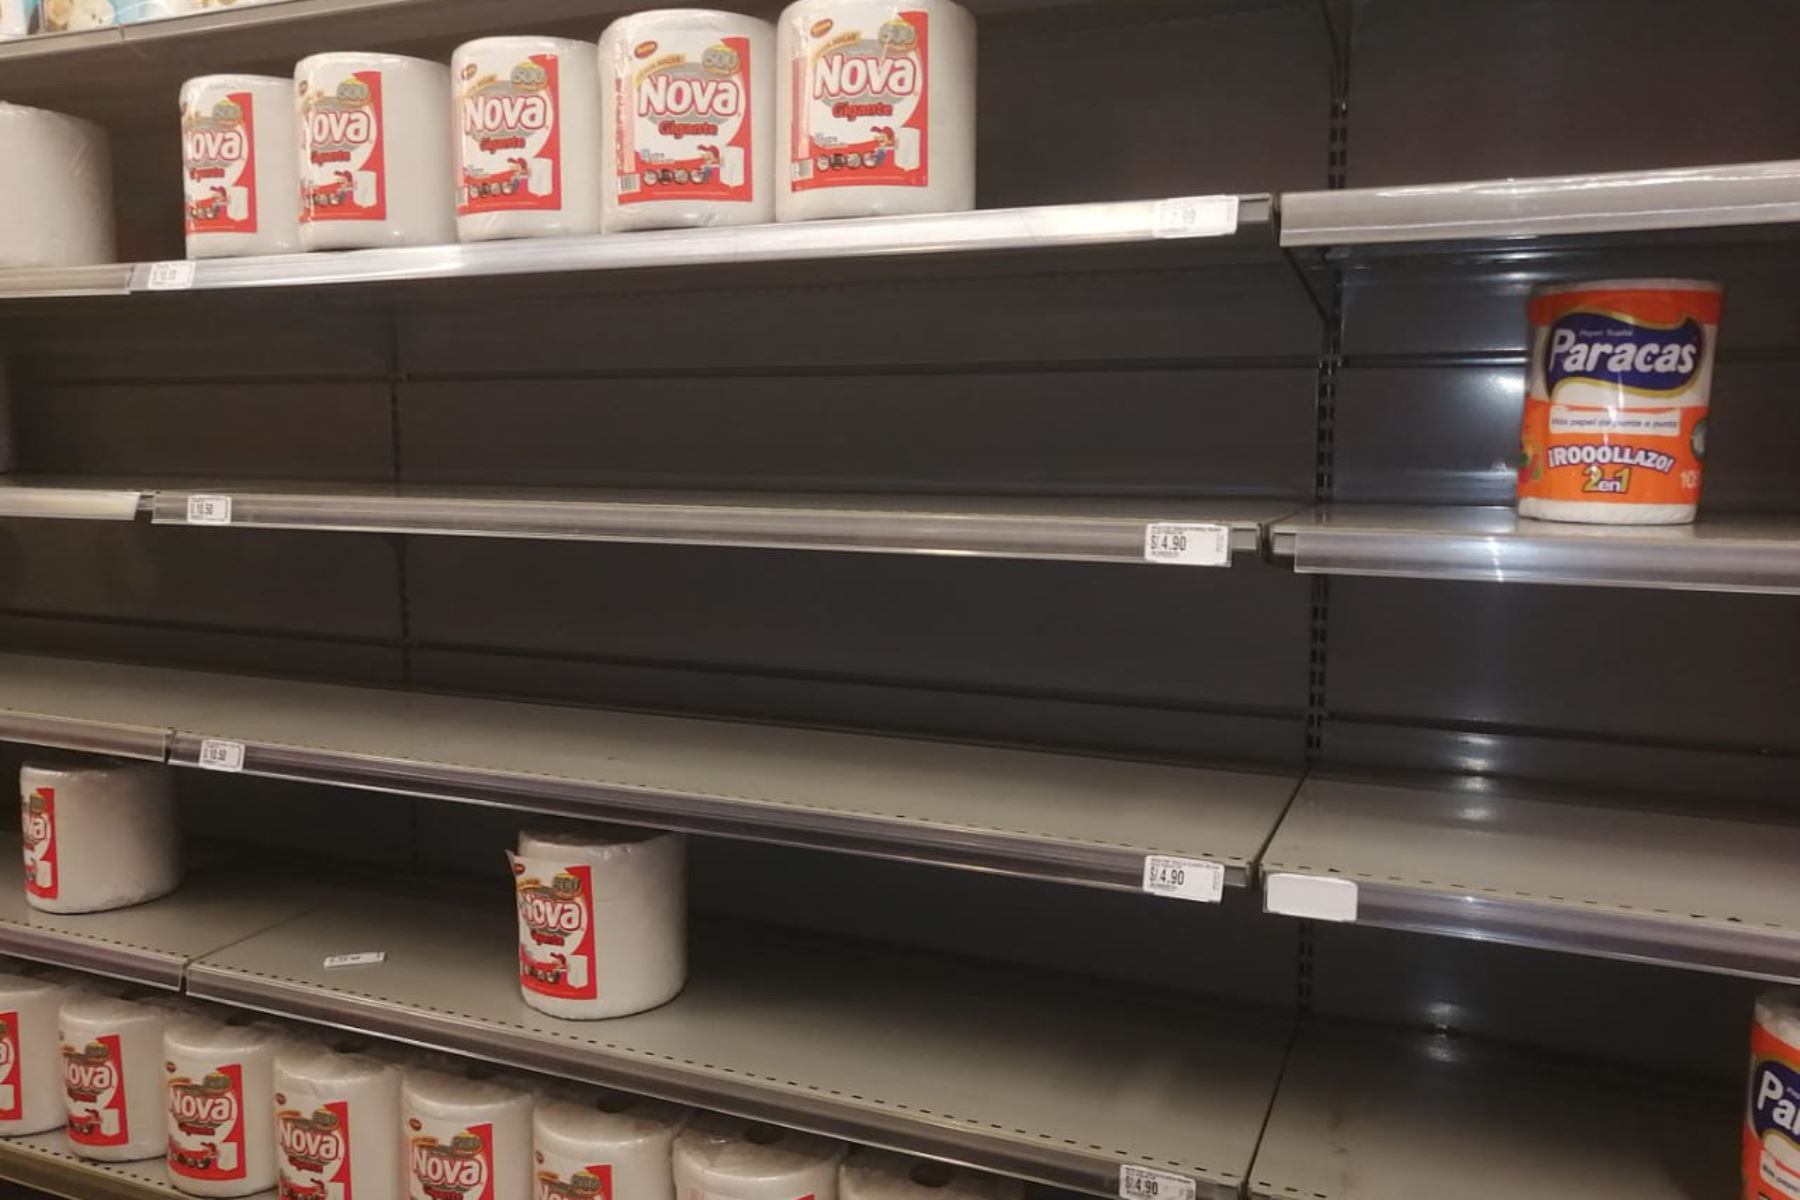 Estas falsas noticias se traducen luego en la compra desmedida de productos, al punto de dejar vacíos de productos a los supermercados por miedo a una futura escasez. Foto: ANDINA.